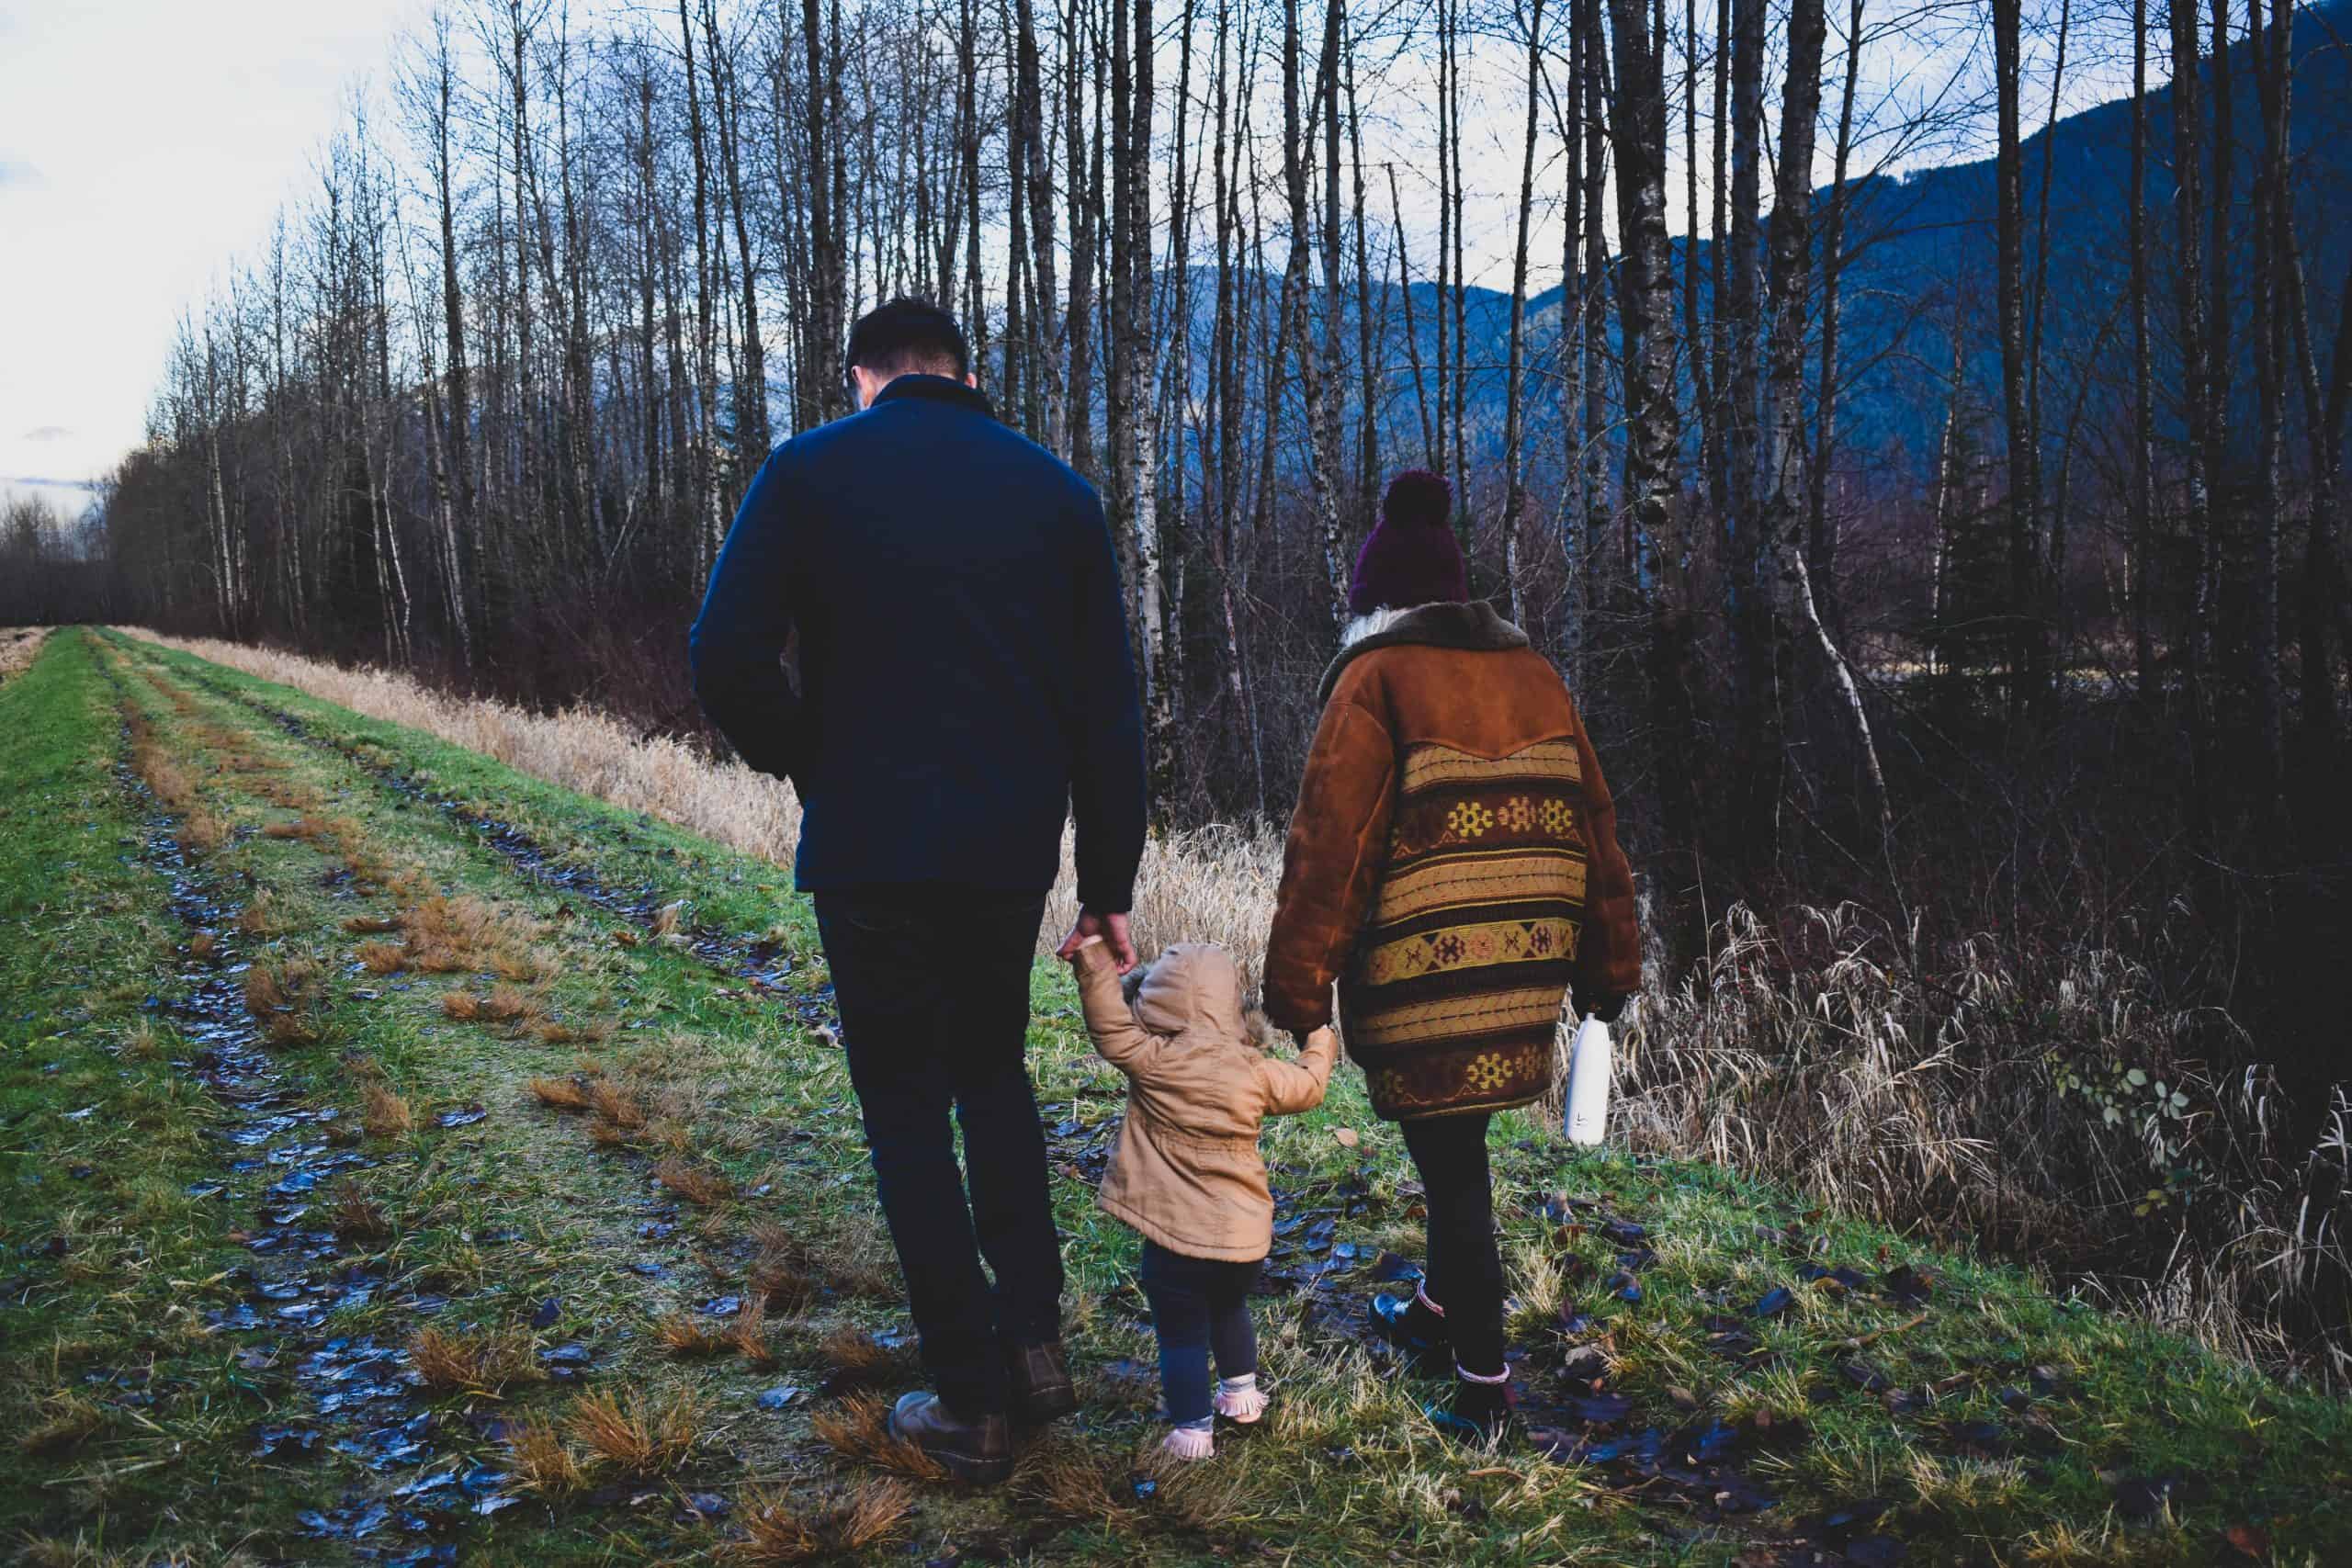 How do you prepare for family walks?